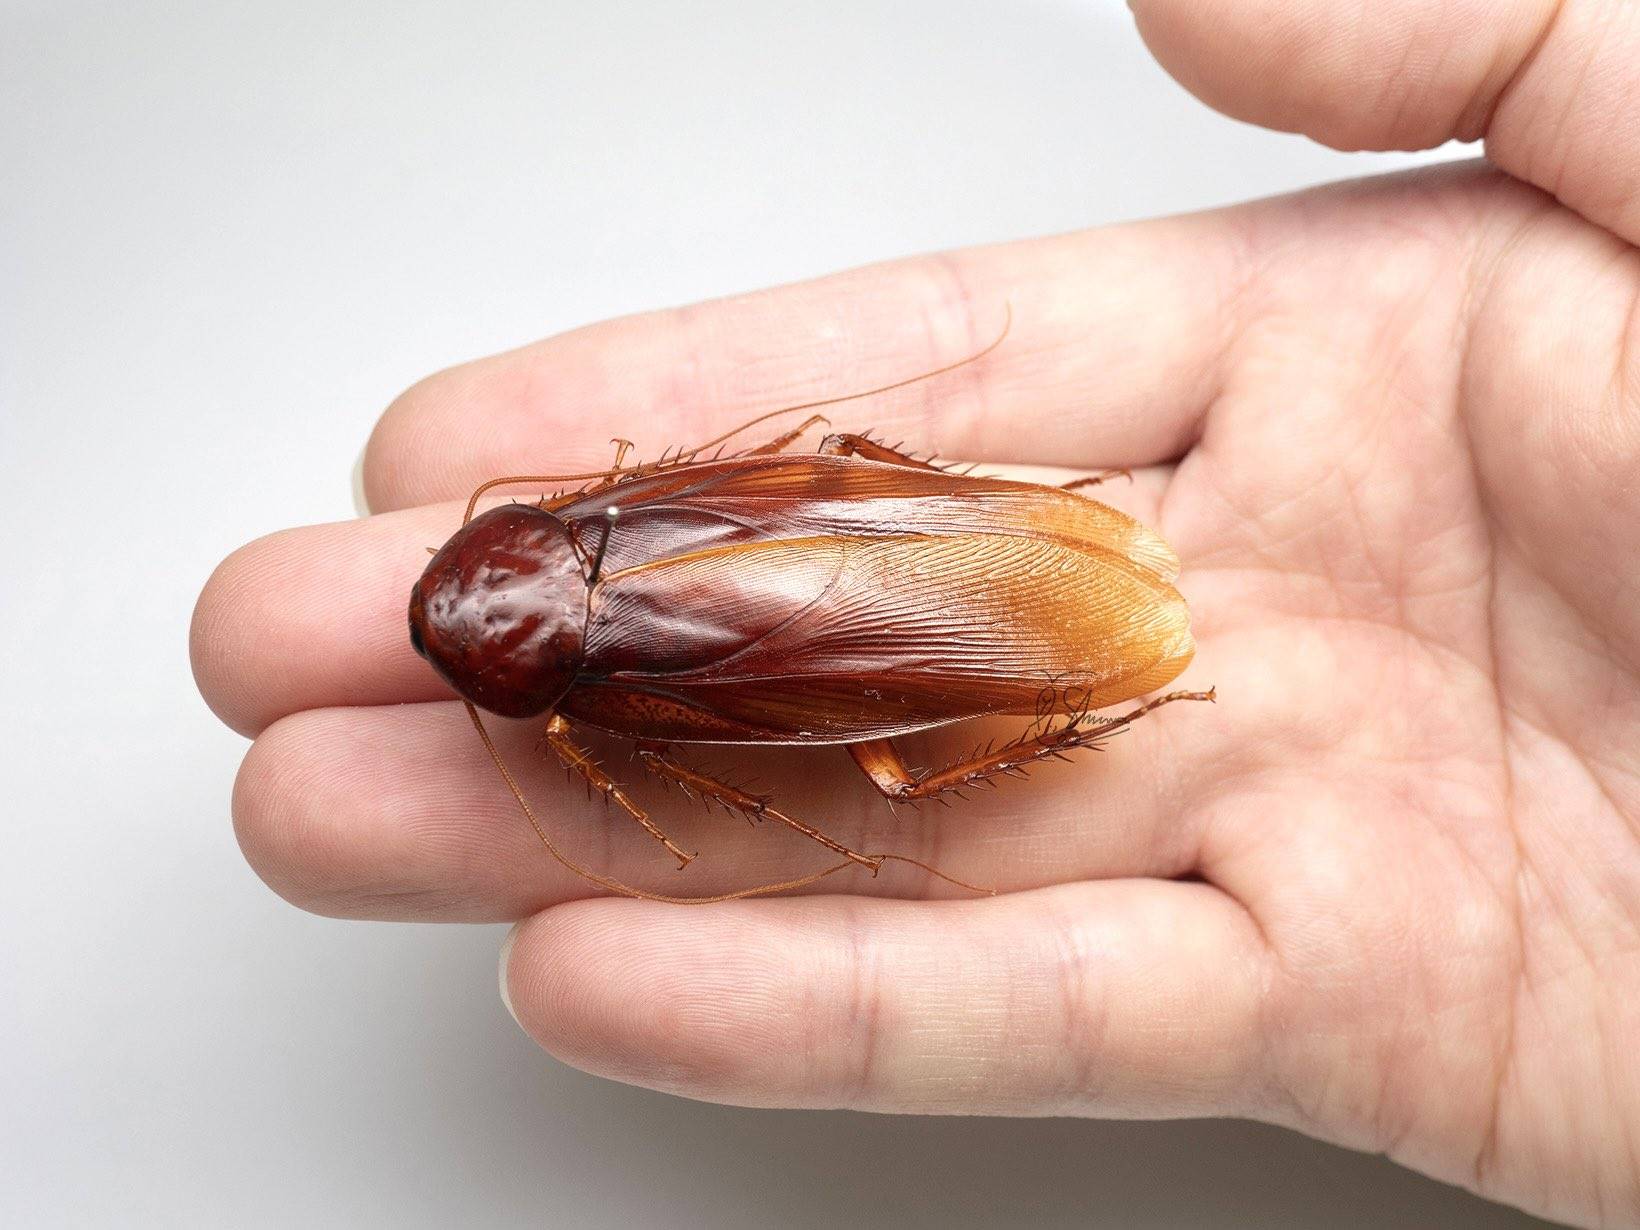 提到蟑螂肯定會讓不少人寒毛直豎，不過日本1位任職在昆蟲觀察公園的員工柳澤靜磨，卻熱衷於尋找全世界各式各樣的蟑螂，他近日又宣布發現2個新品種蟑螂，其中之一是台灣特有種「台灣大蠊」（學名：Periplaneta gigantea），平均身長超過5公分是同屬體型中最大一種。不過「正港逮丸螂」只出現在台灣山林，生活中常見的外來種「小強」如何消滅，一直都是網路熱議話題，《網路溫度計》更曾做過相關調查。